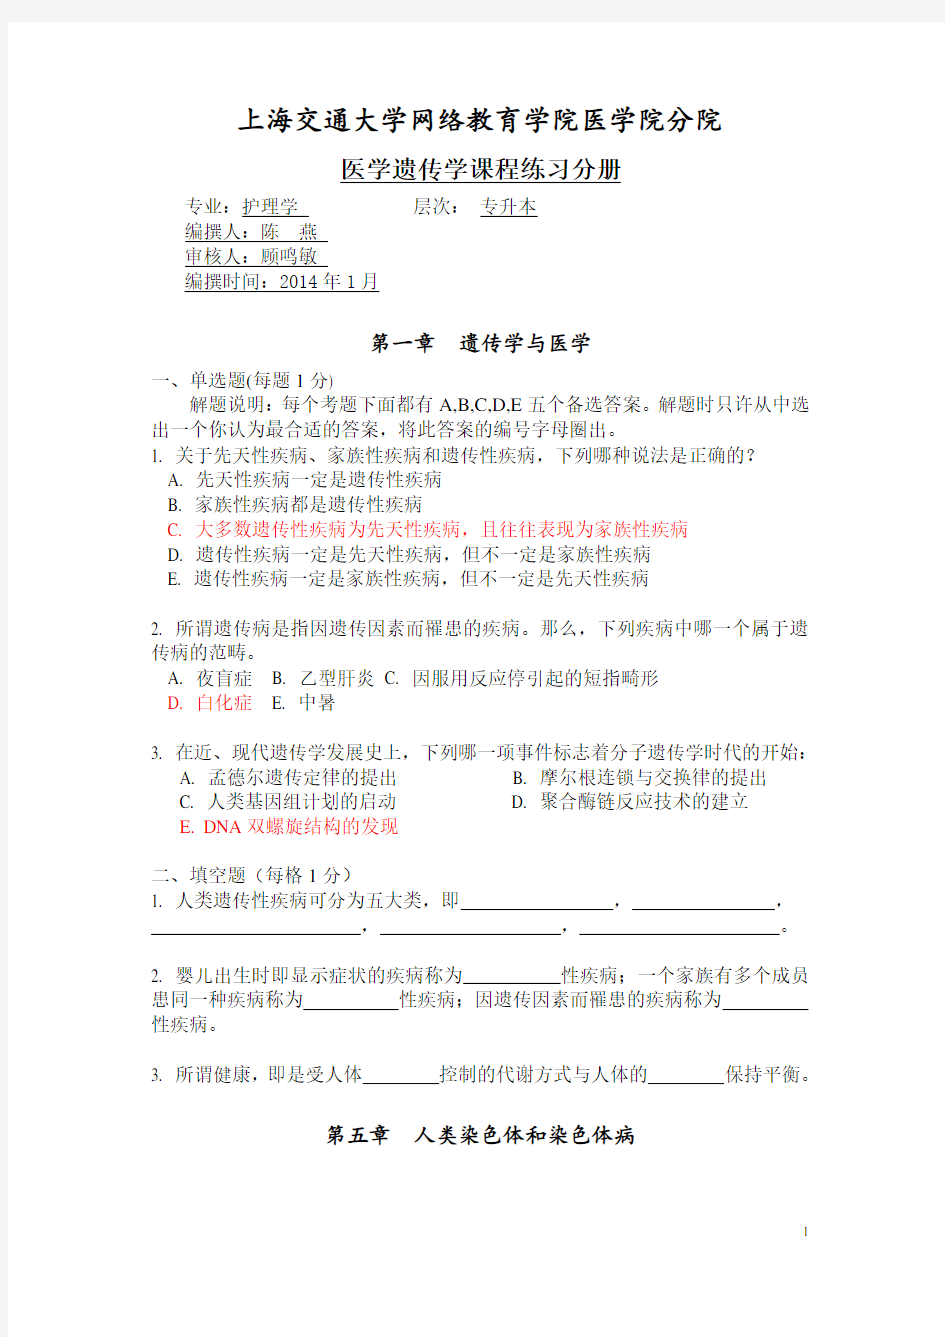 上海交通大学医学院《医学遗传学》练习册2014